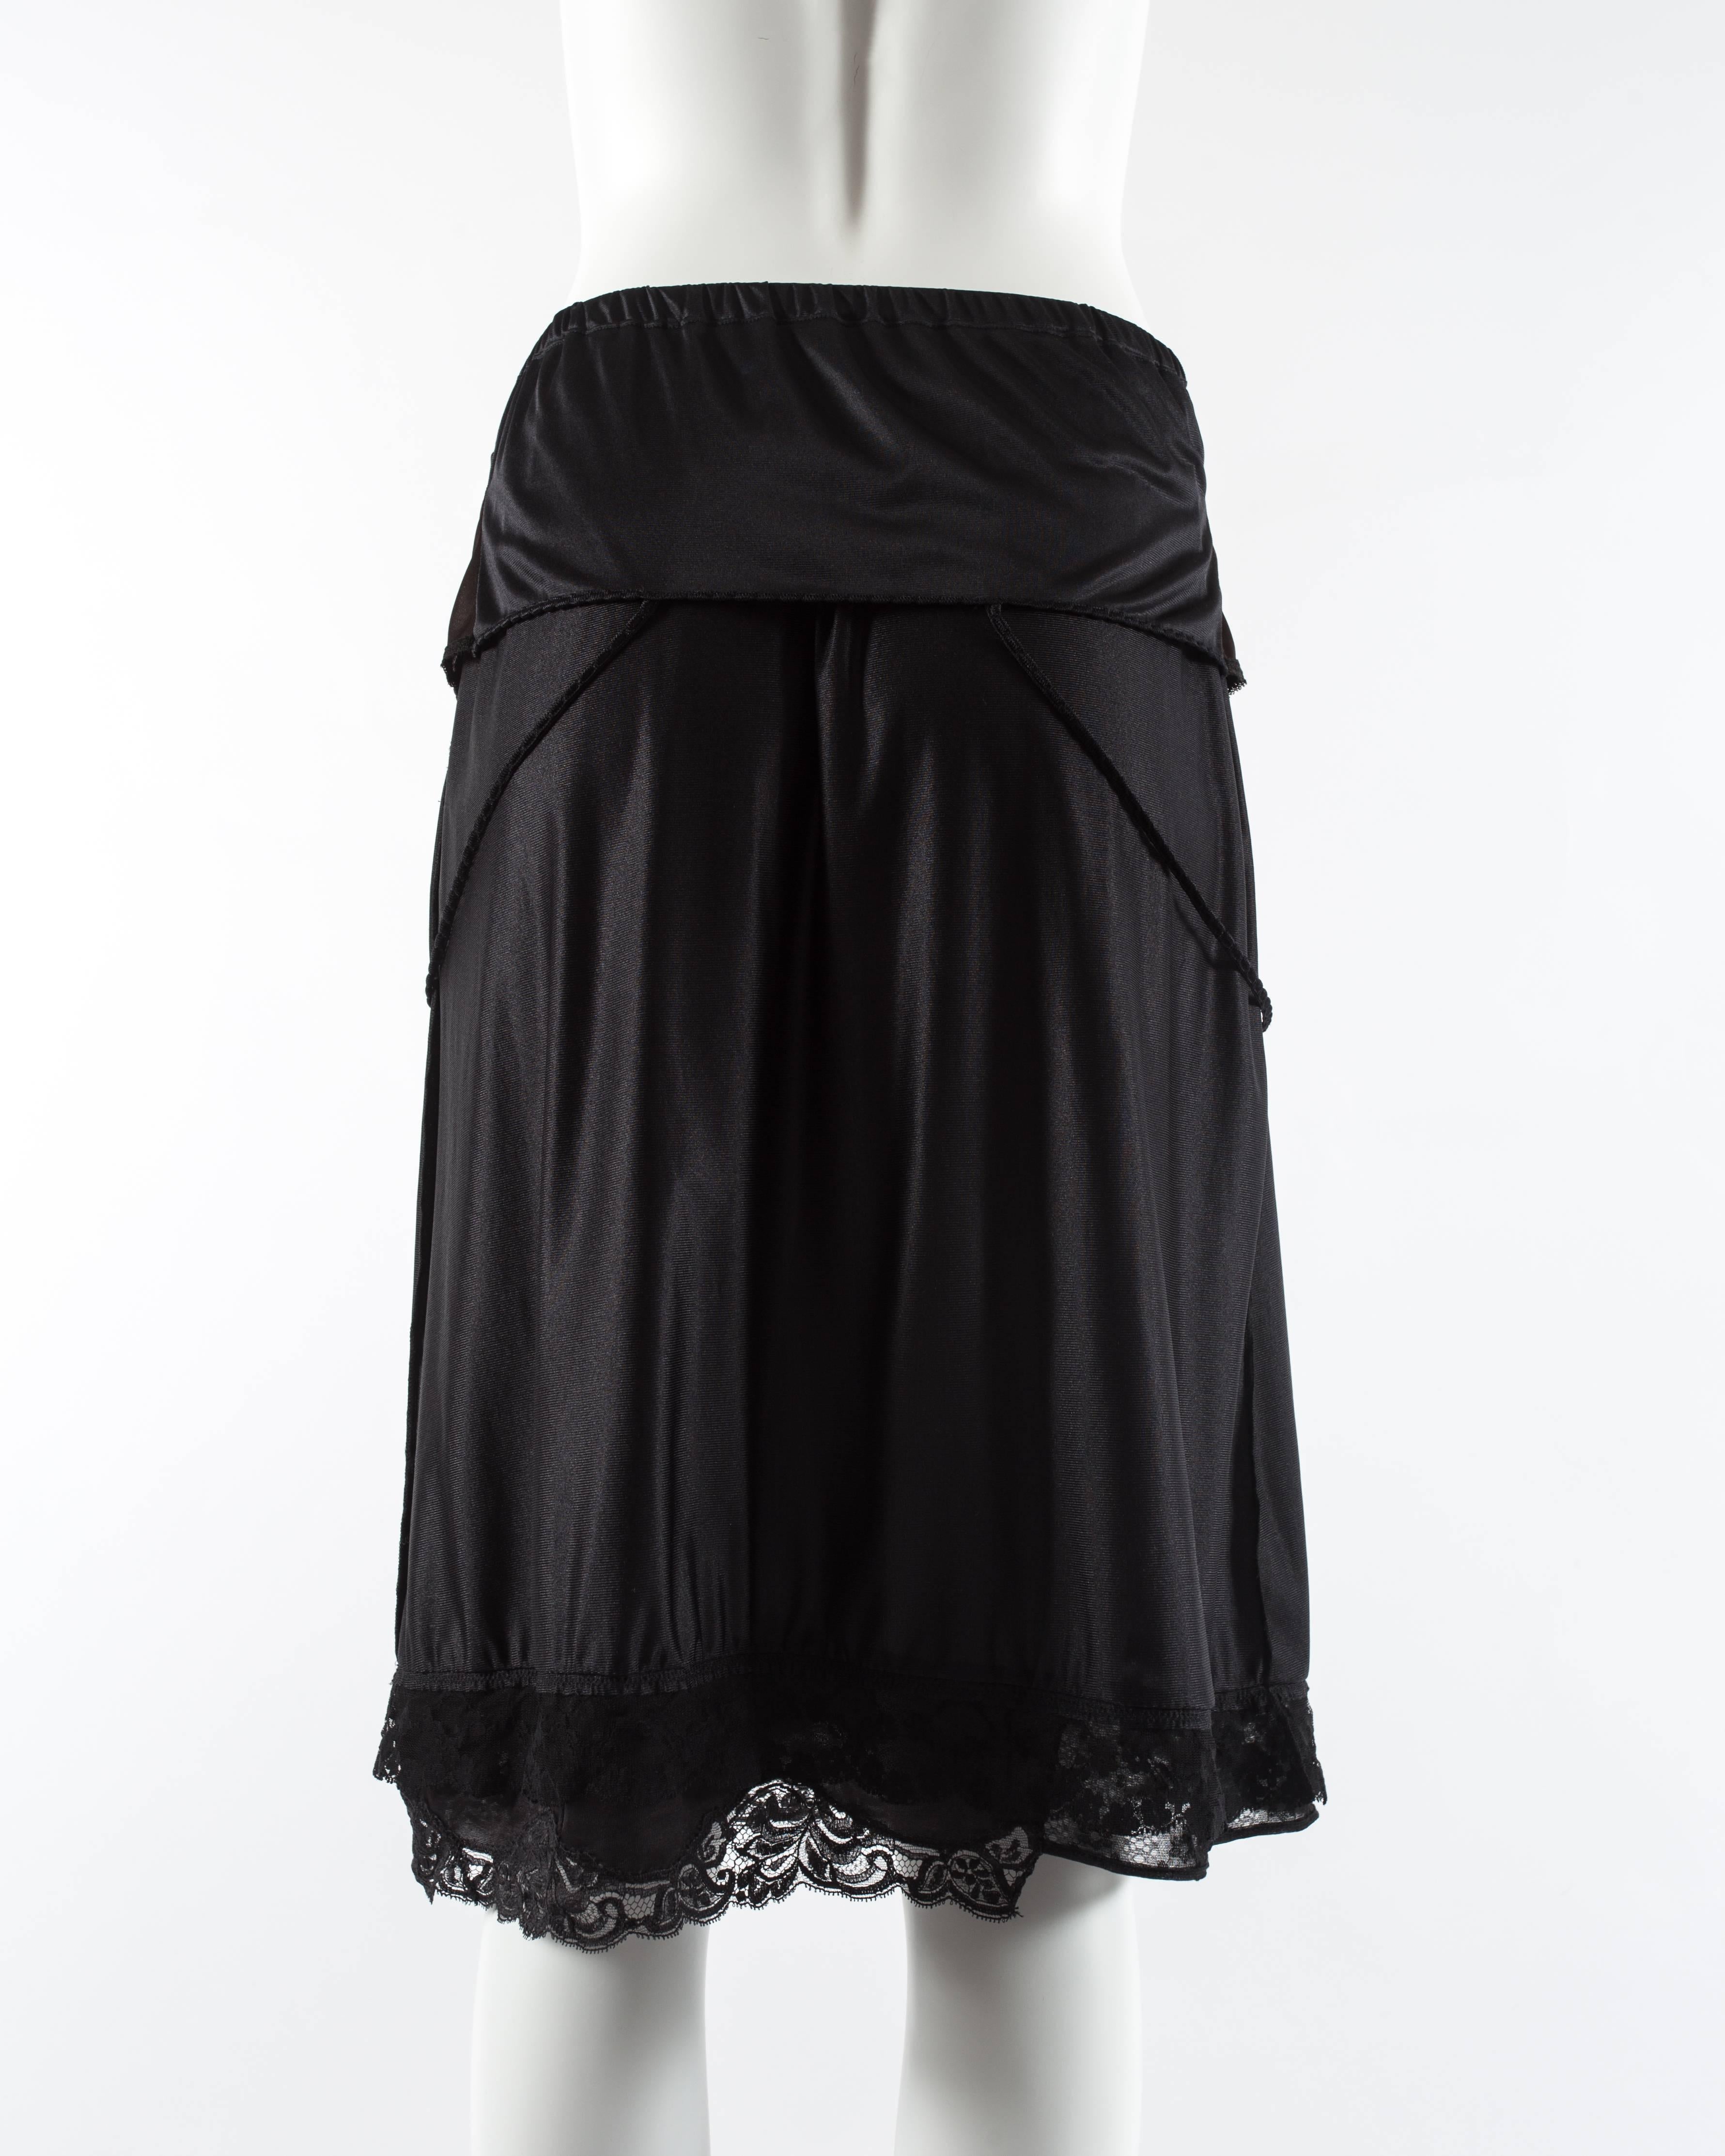 Black Martin Margiela black artisanal slip dress reconstructed into a skirt, ss 2003 For Sale